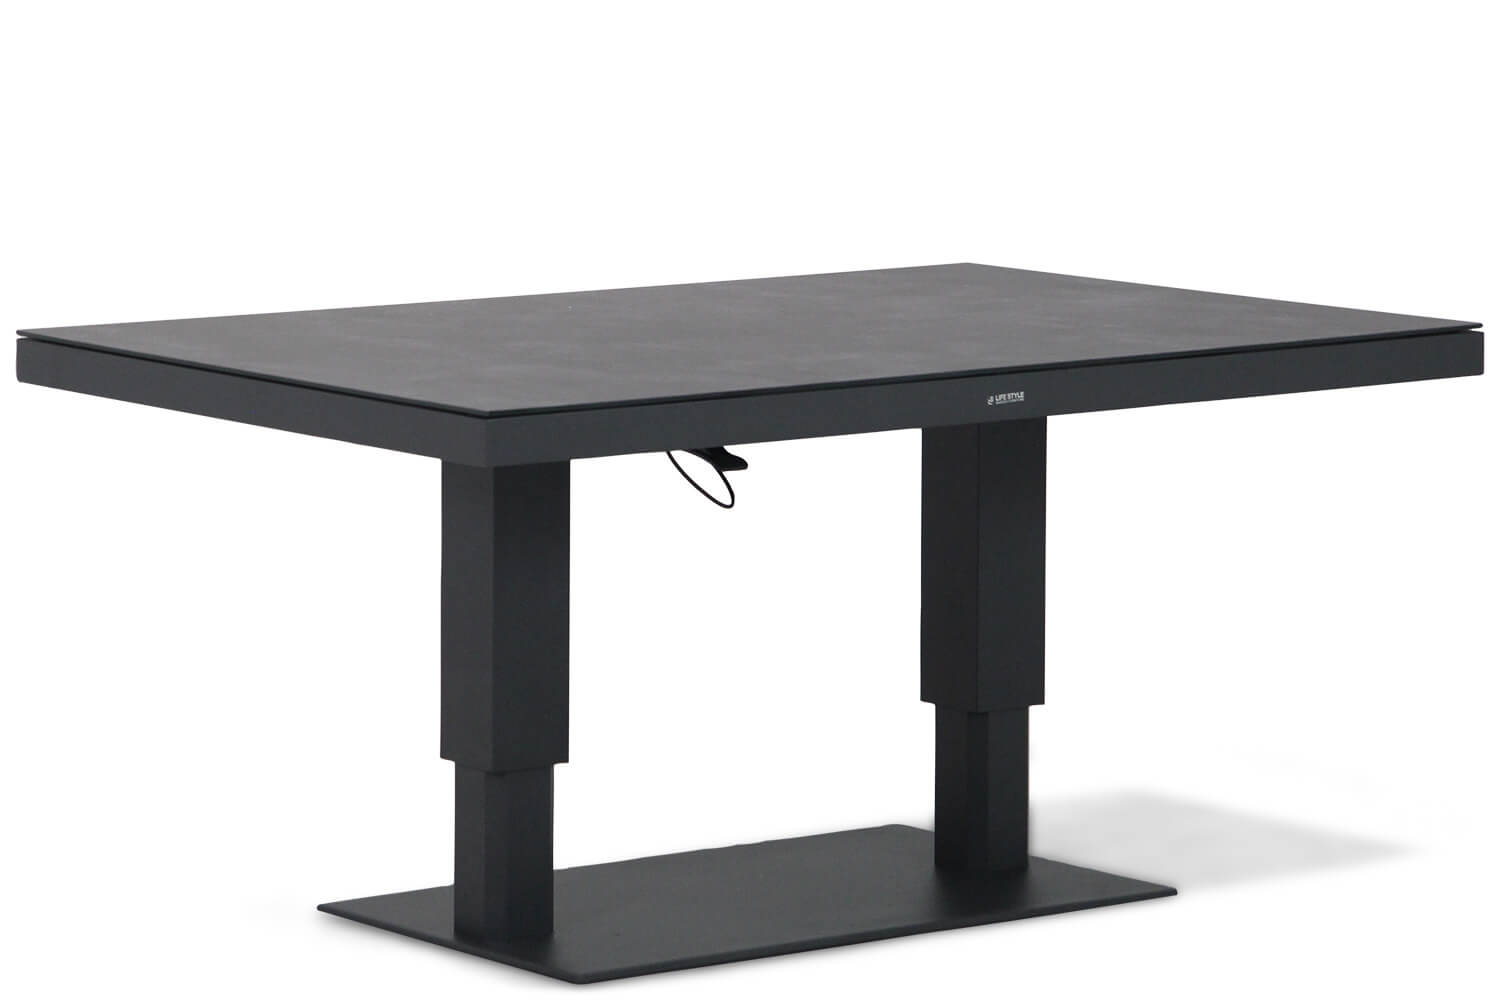 Lifestyle Garden Furniture Lifestyle Versatile in hoogte verstelbare tafel 140x90cm